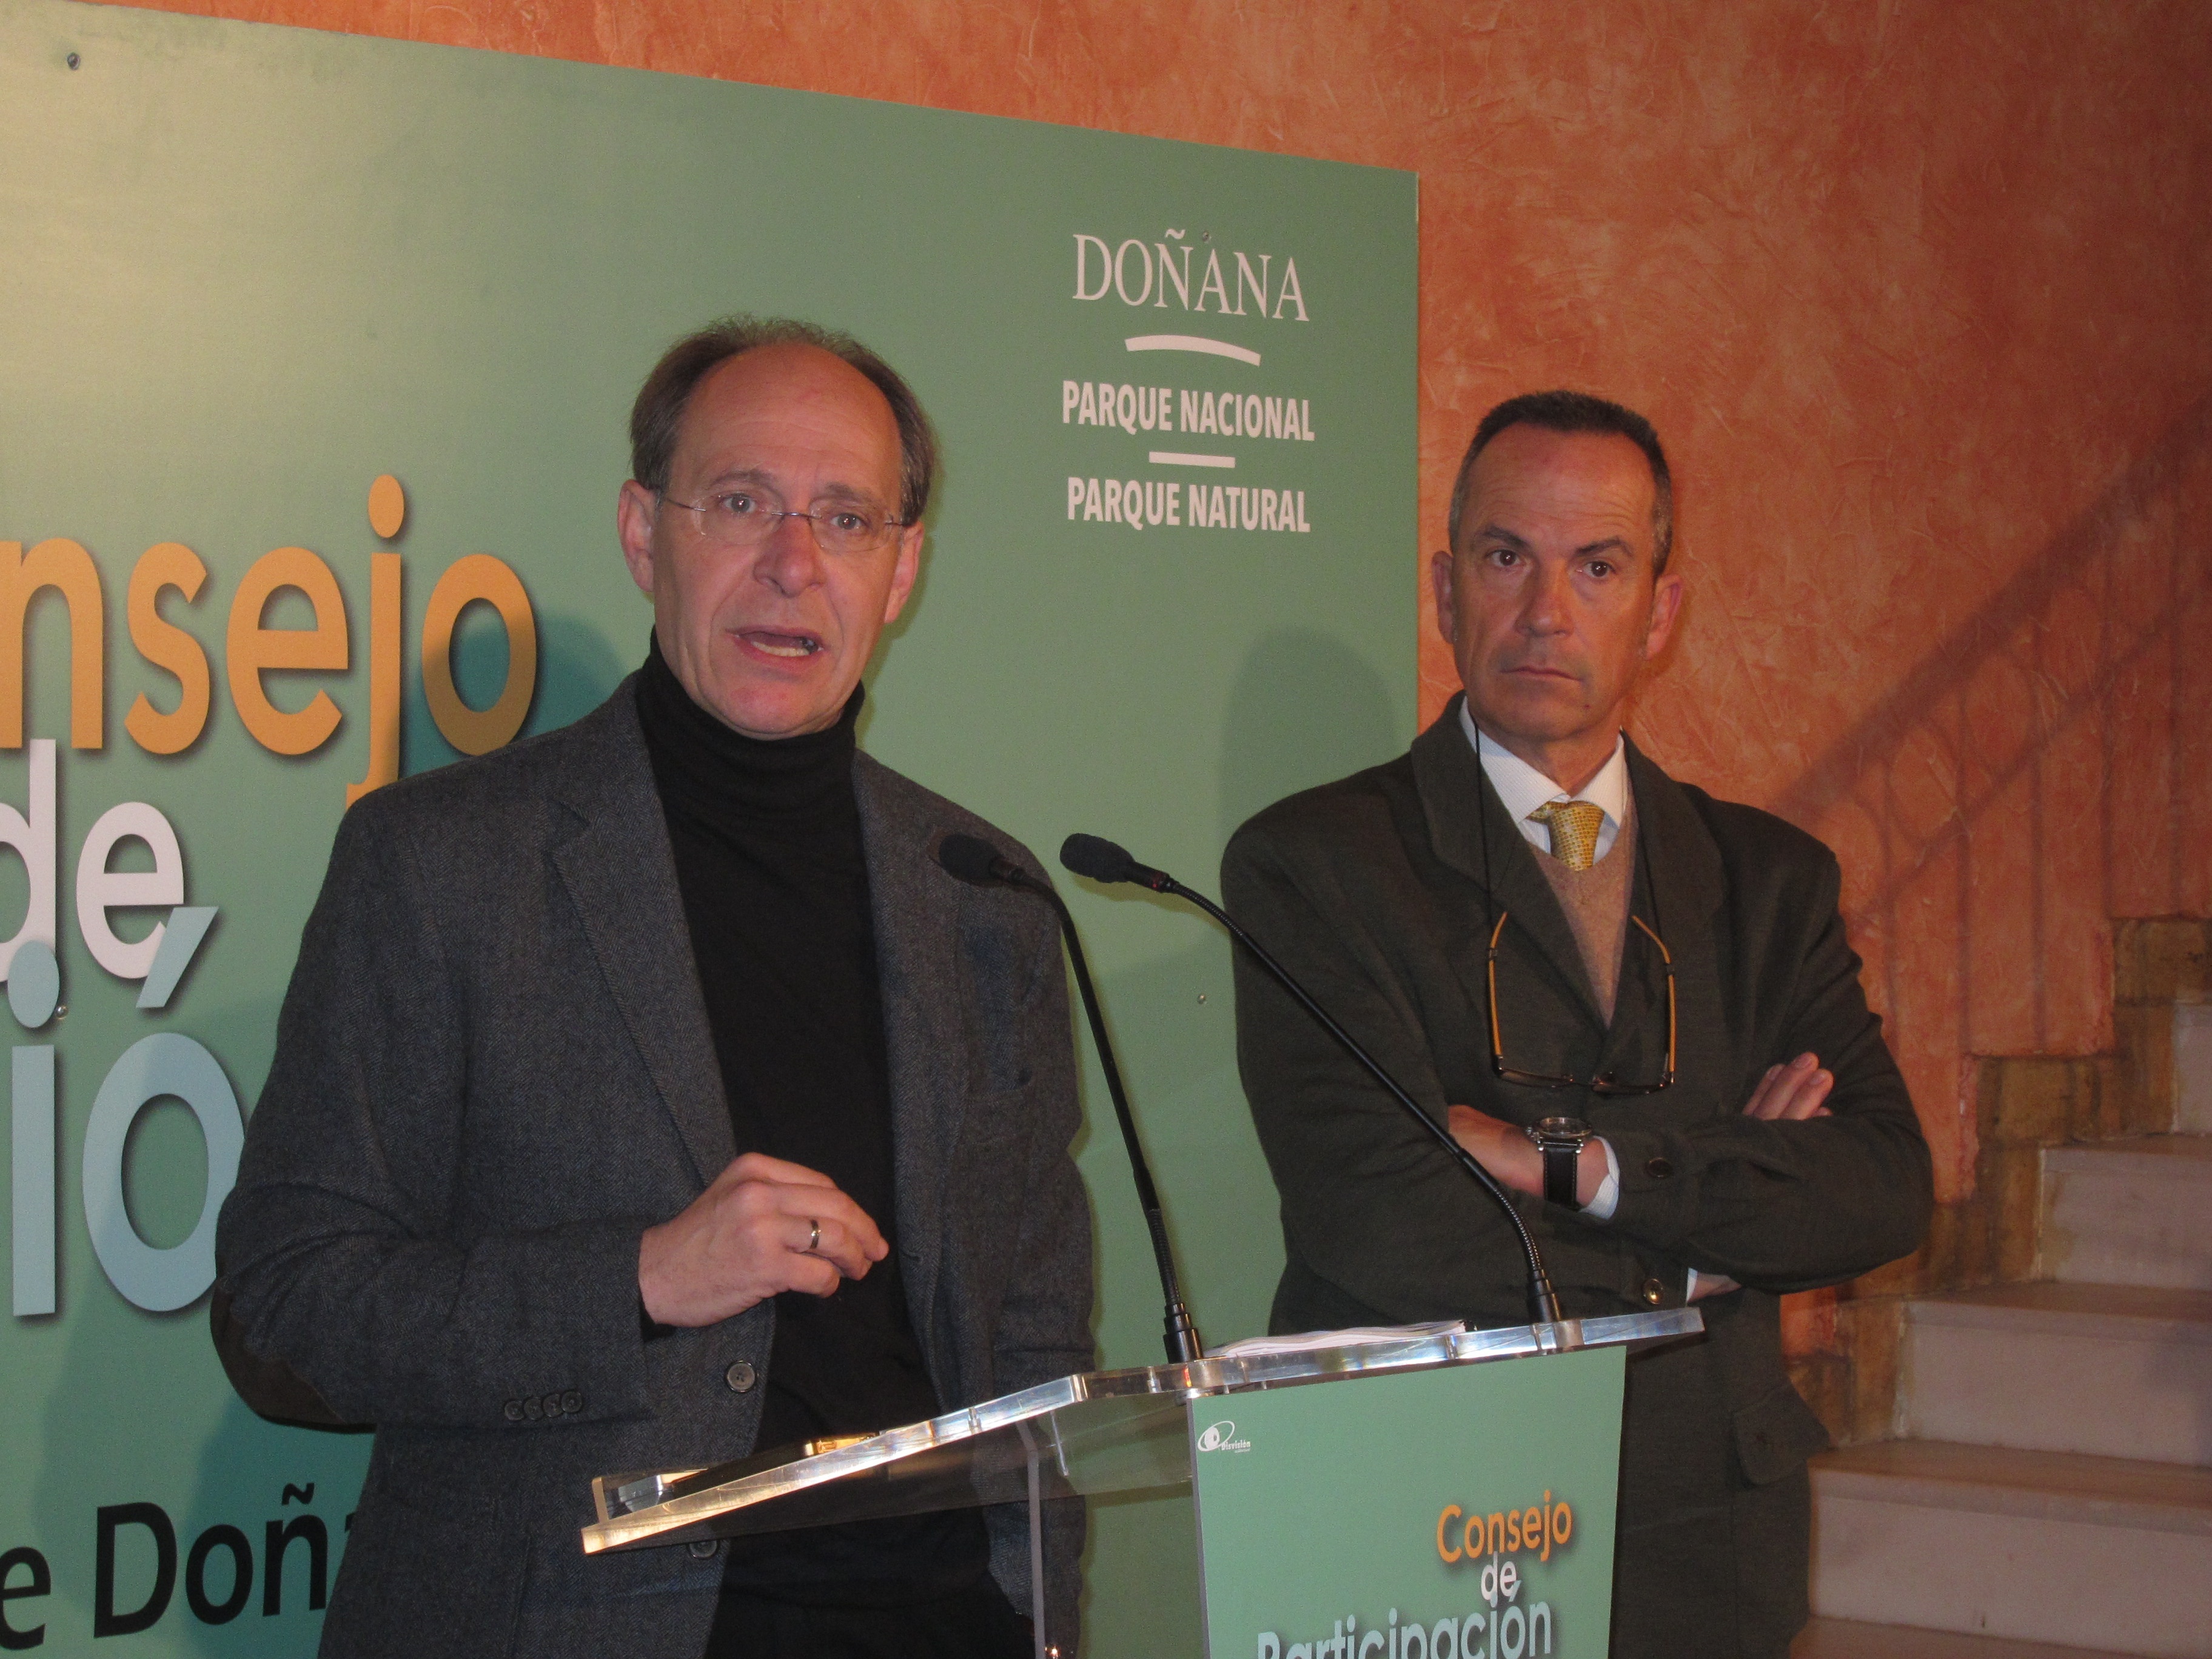 La Junta andaluza señala que Felipe González es el «mejor embajador de Doñana» y ve «un mal remedio» pedir su dimisión